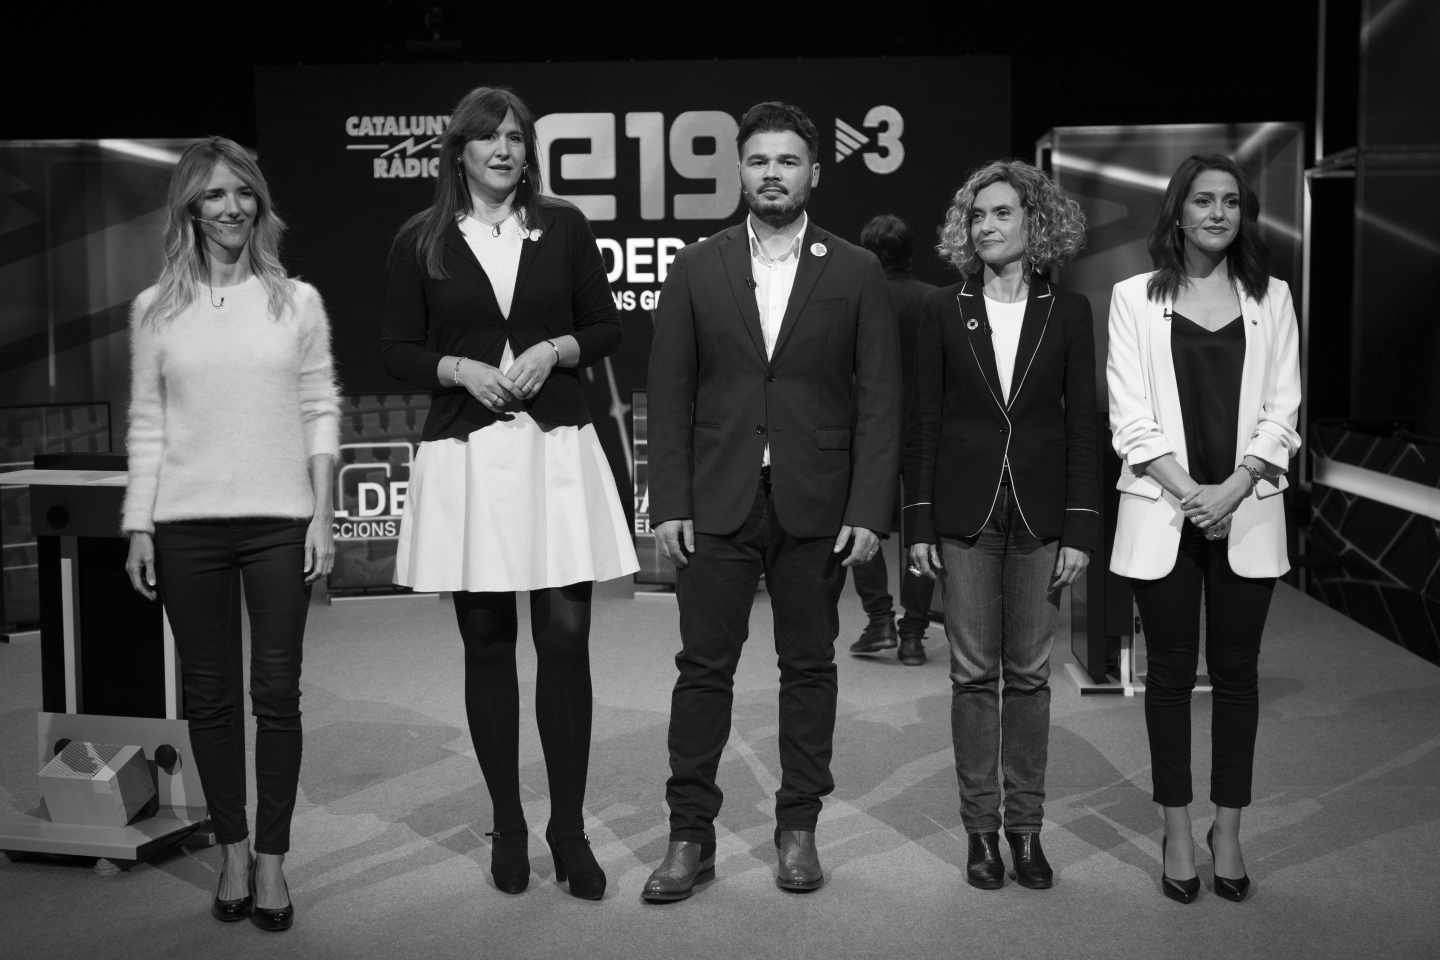 Debate de Jaume Asens (ECP), Gabriel Rufián (ERC), Laura Borràs (JxCat), Meritxell Batet (PSC), Cayetana Álvarez de Toledo (PP) e Inés Arrimadas (Cs) en TV3.